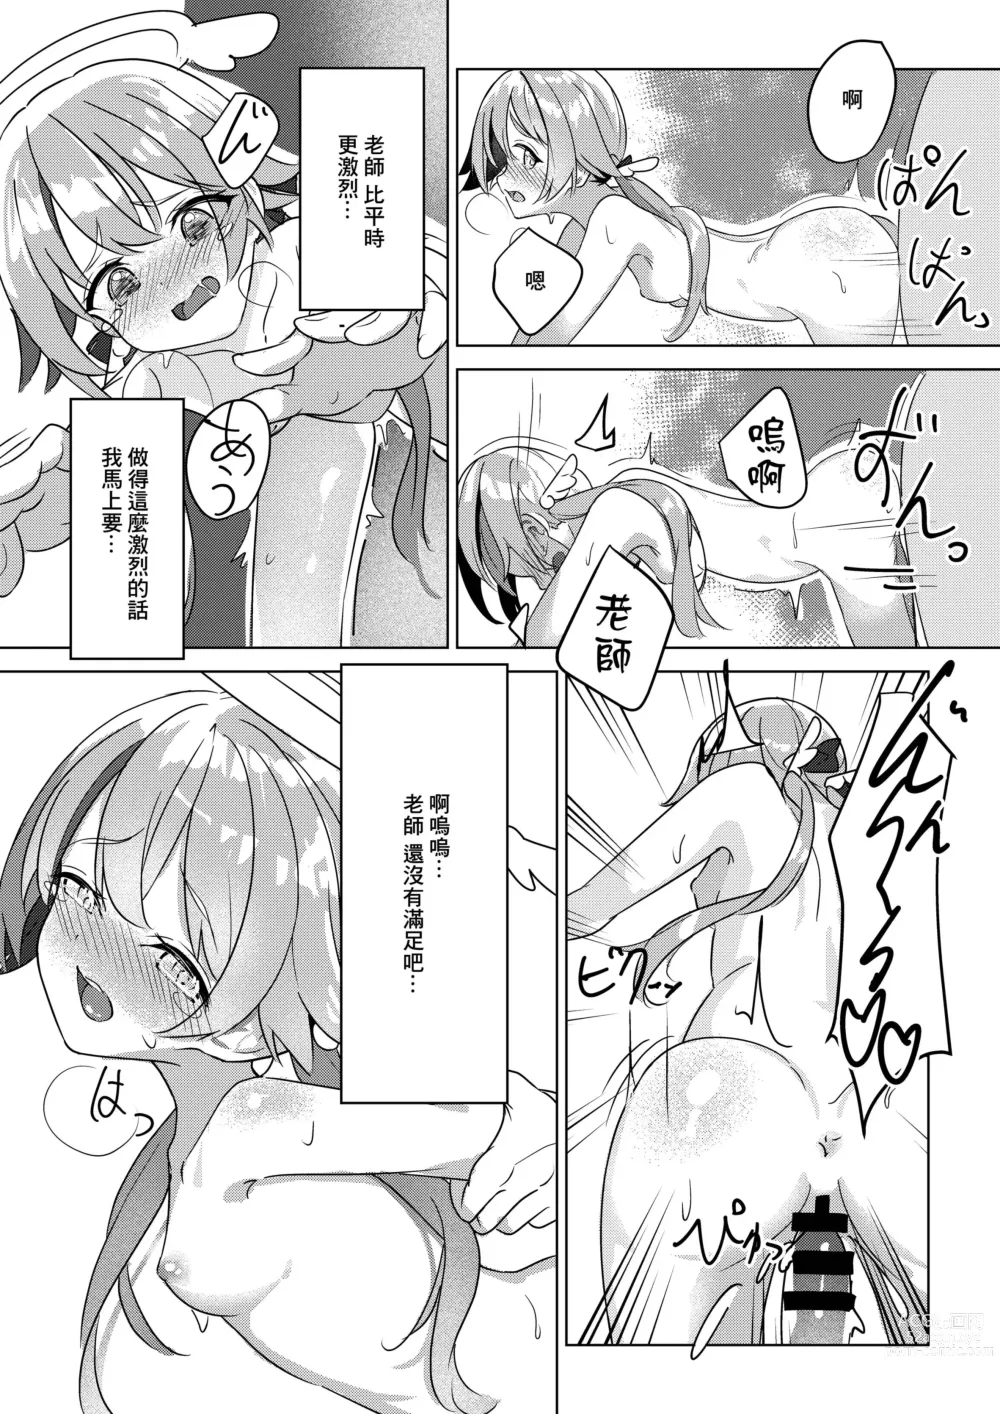 Page 7 of doujinshi Nicchoku no Hifumi to H